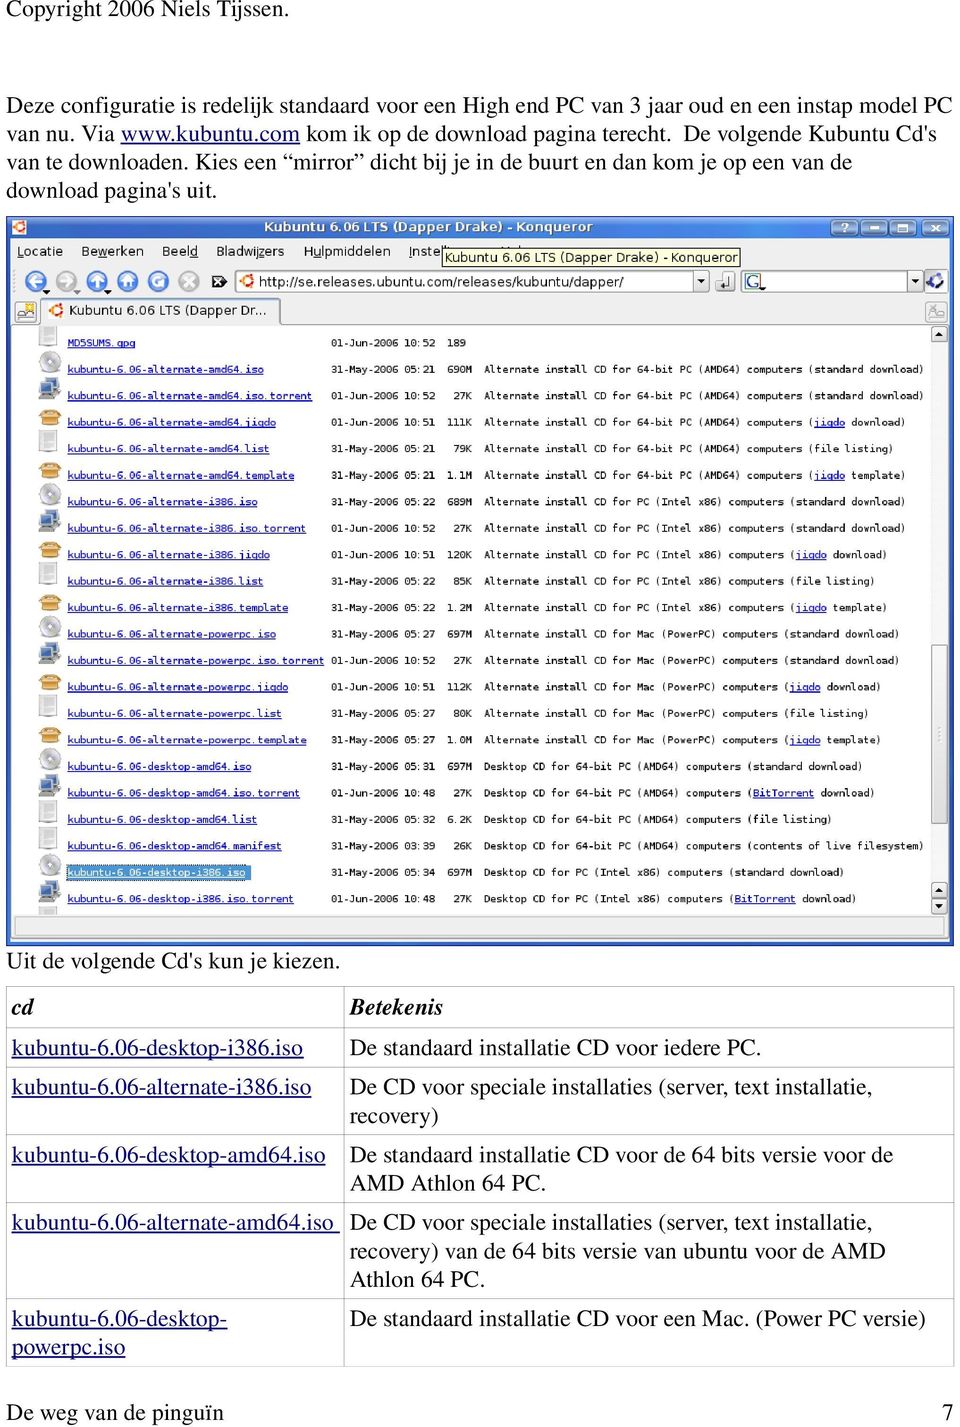 06 desktop i386.iso De standaard installatie CD voor iedere PC. kubuntu 6.06 alternate i386.iso De CD voor speciale installaties (server, text installatie, recovery) kubuntu 6.06 desktop amd64.